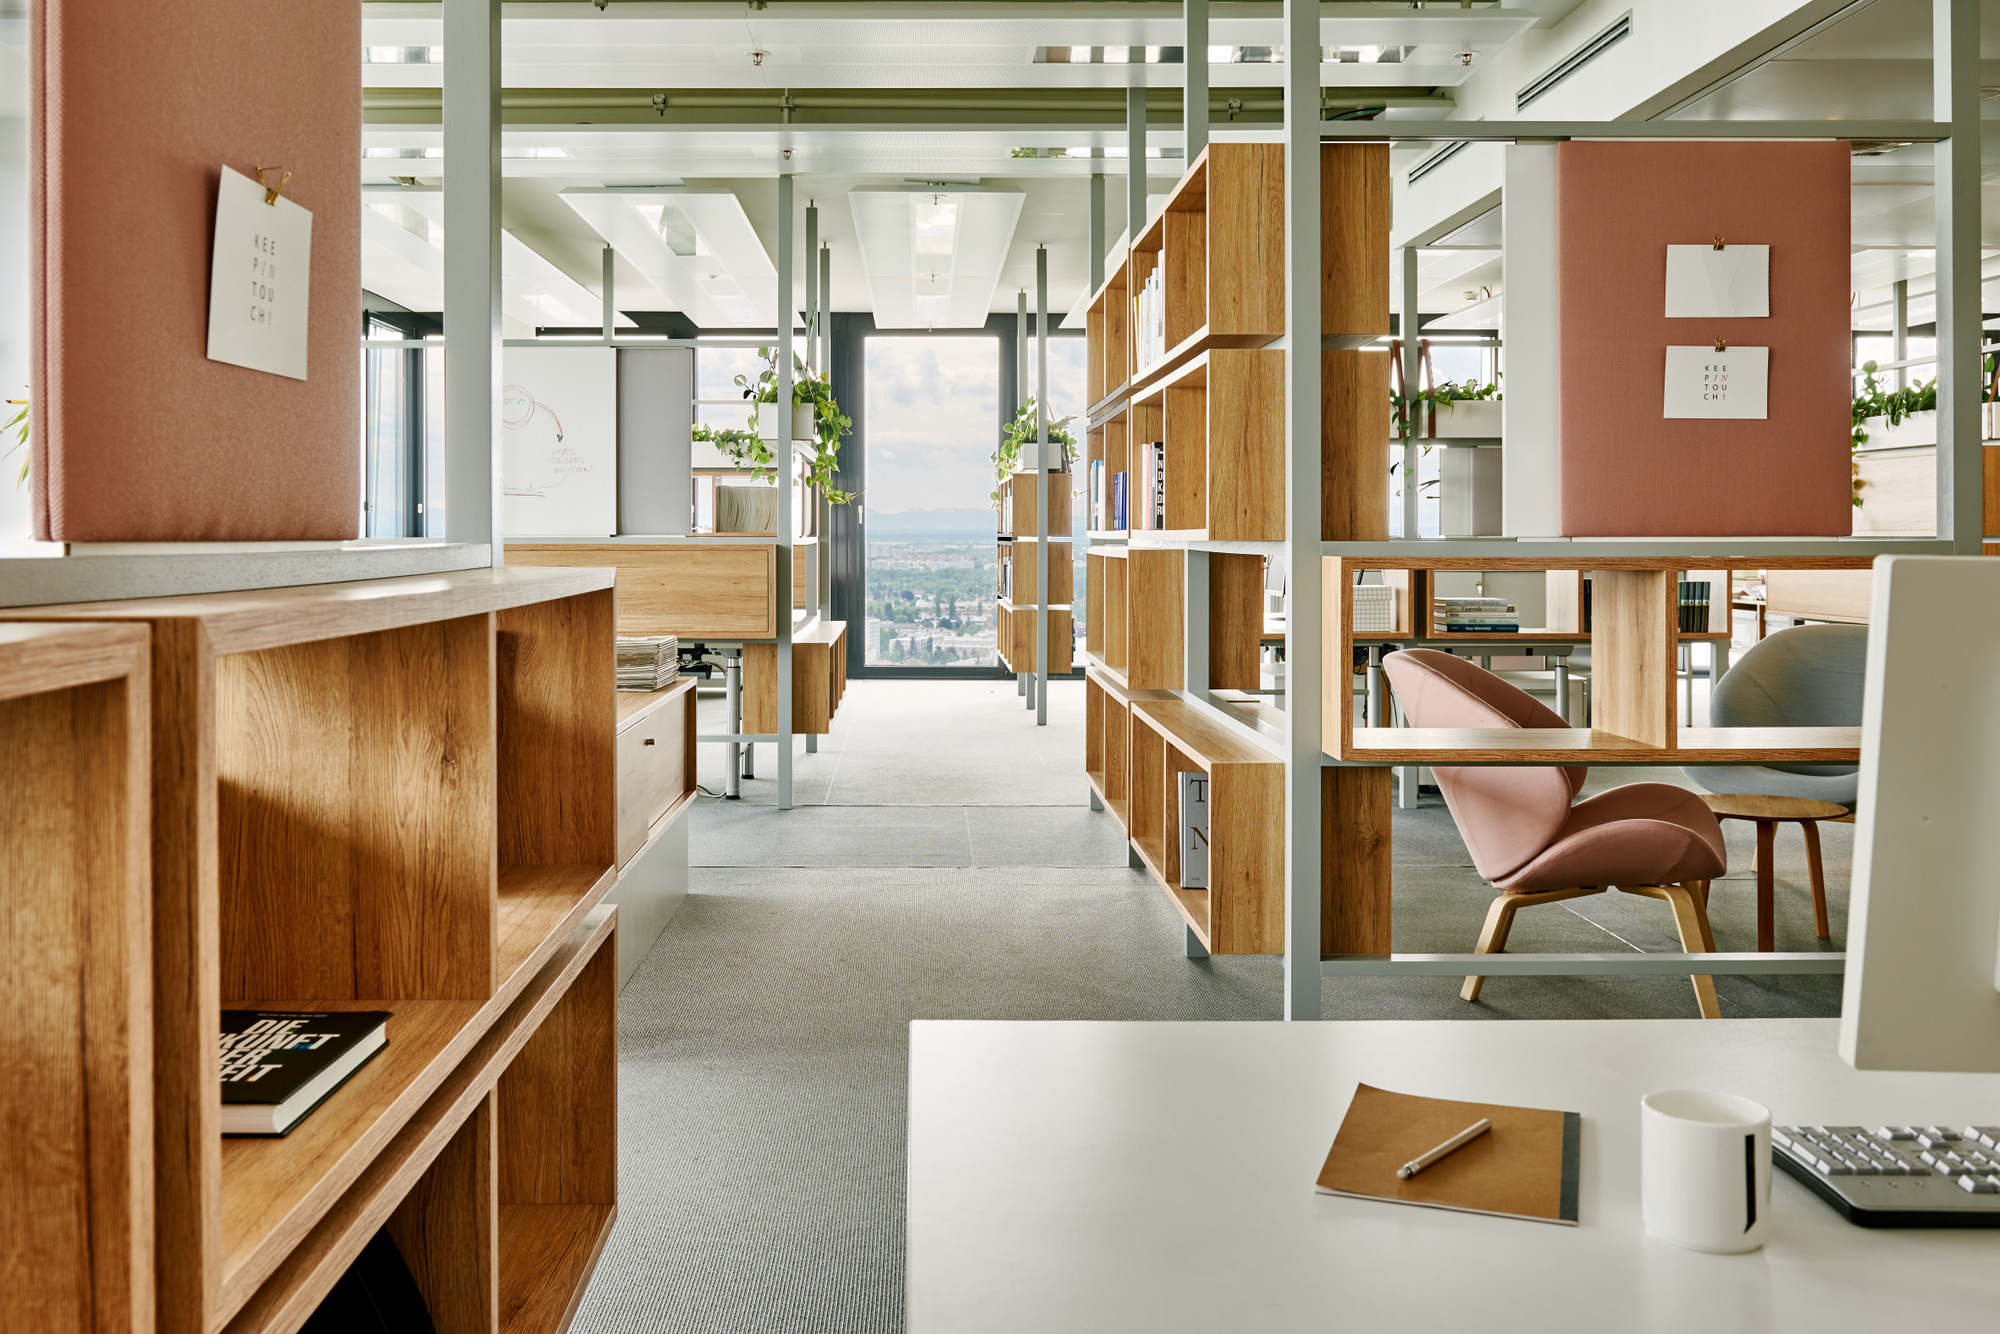 图片[3]|《南德意志报》驻慕尼黑办事处|ART-Arrakis | 建筑室内设计的创新与灵感